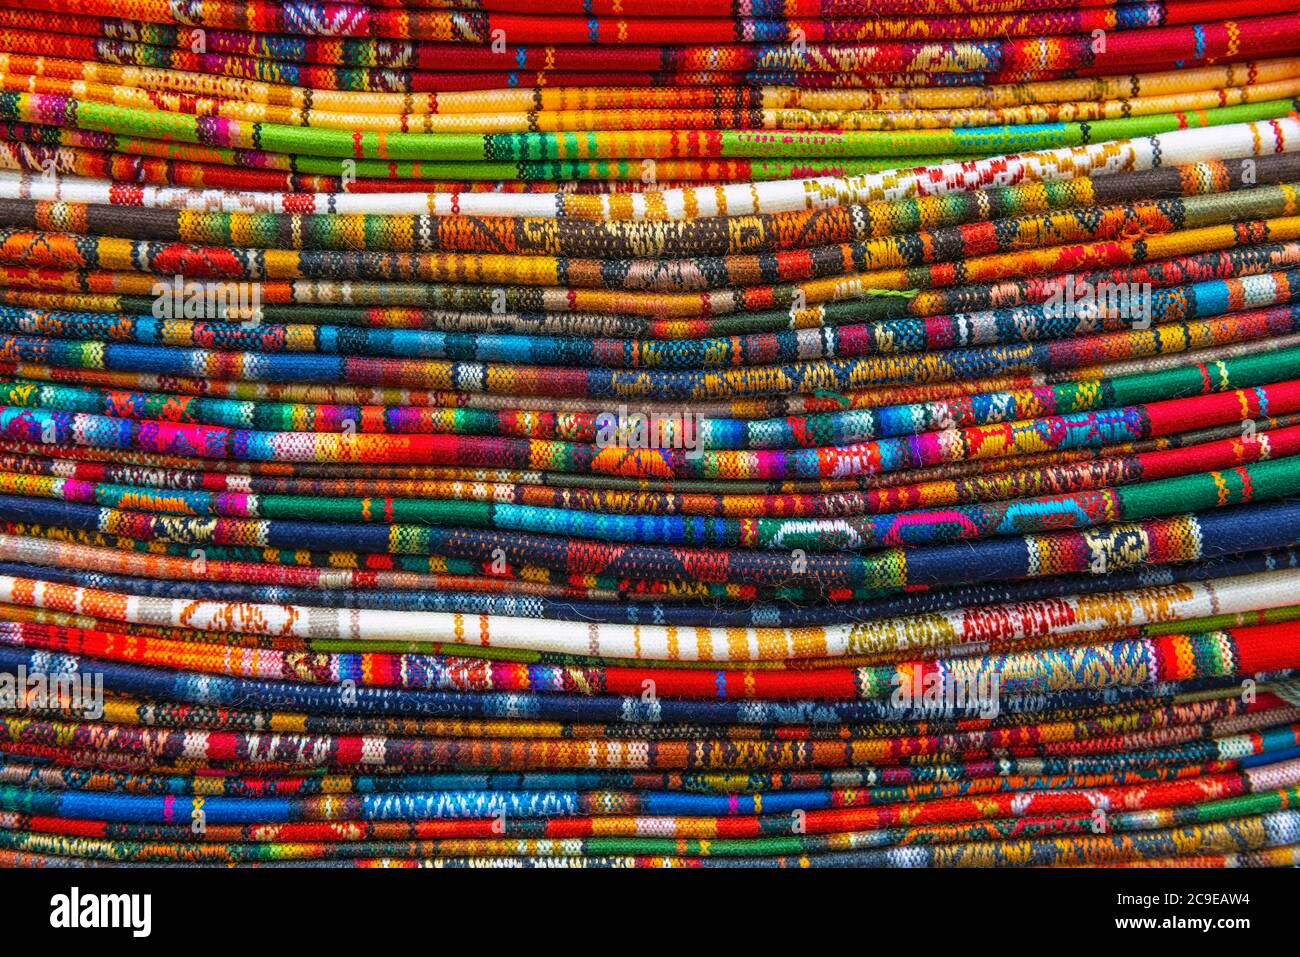 Une pile de textiles des Andes sur un marché artisanal local, Cusco, Pérou. Banque D'Images